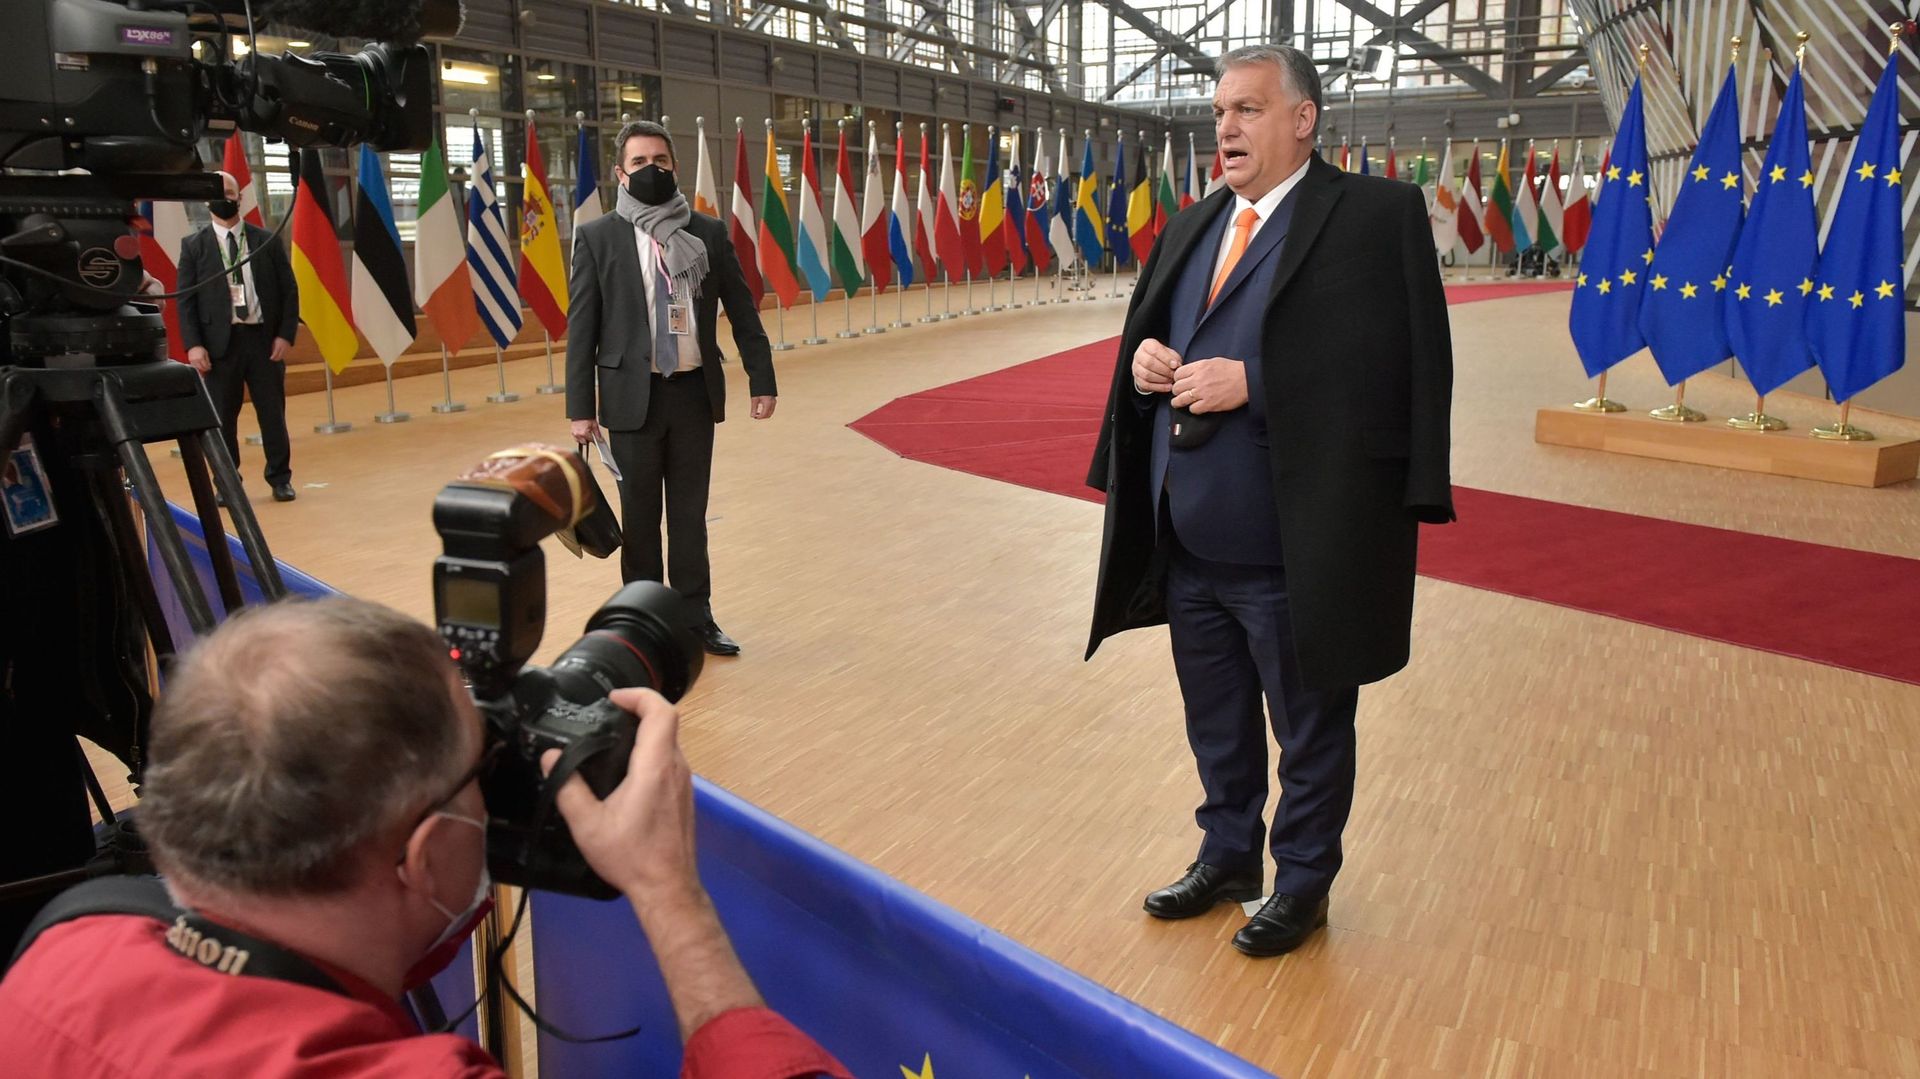 Sommet européen : "très proche d’atteindre un accord", selon Viktor Orban